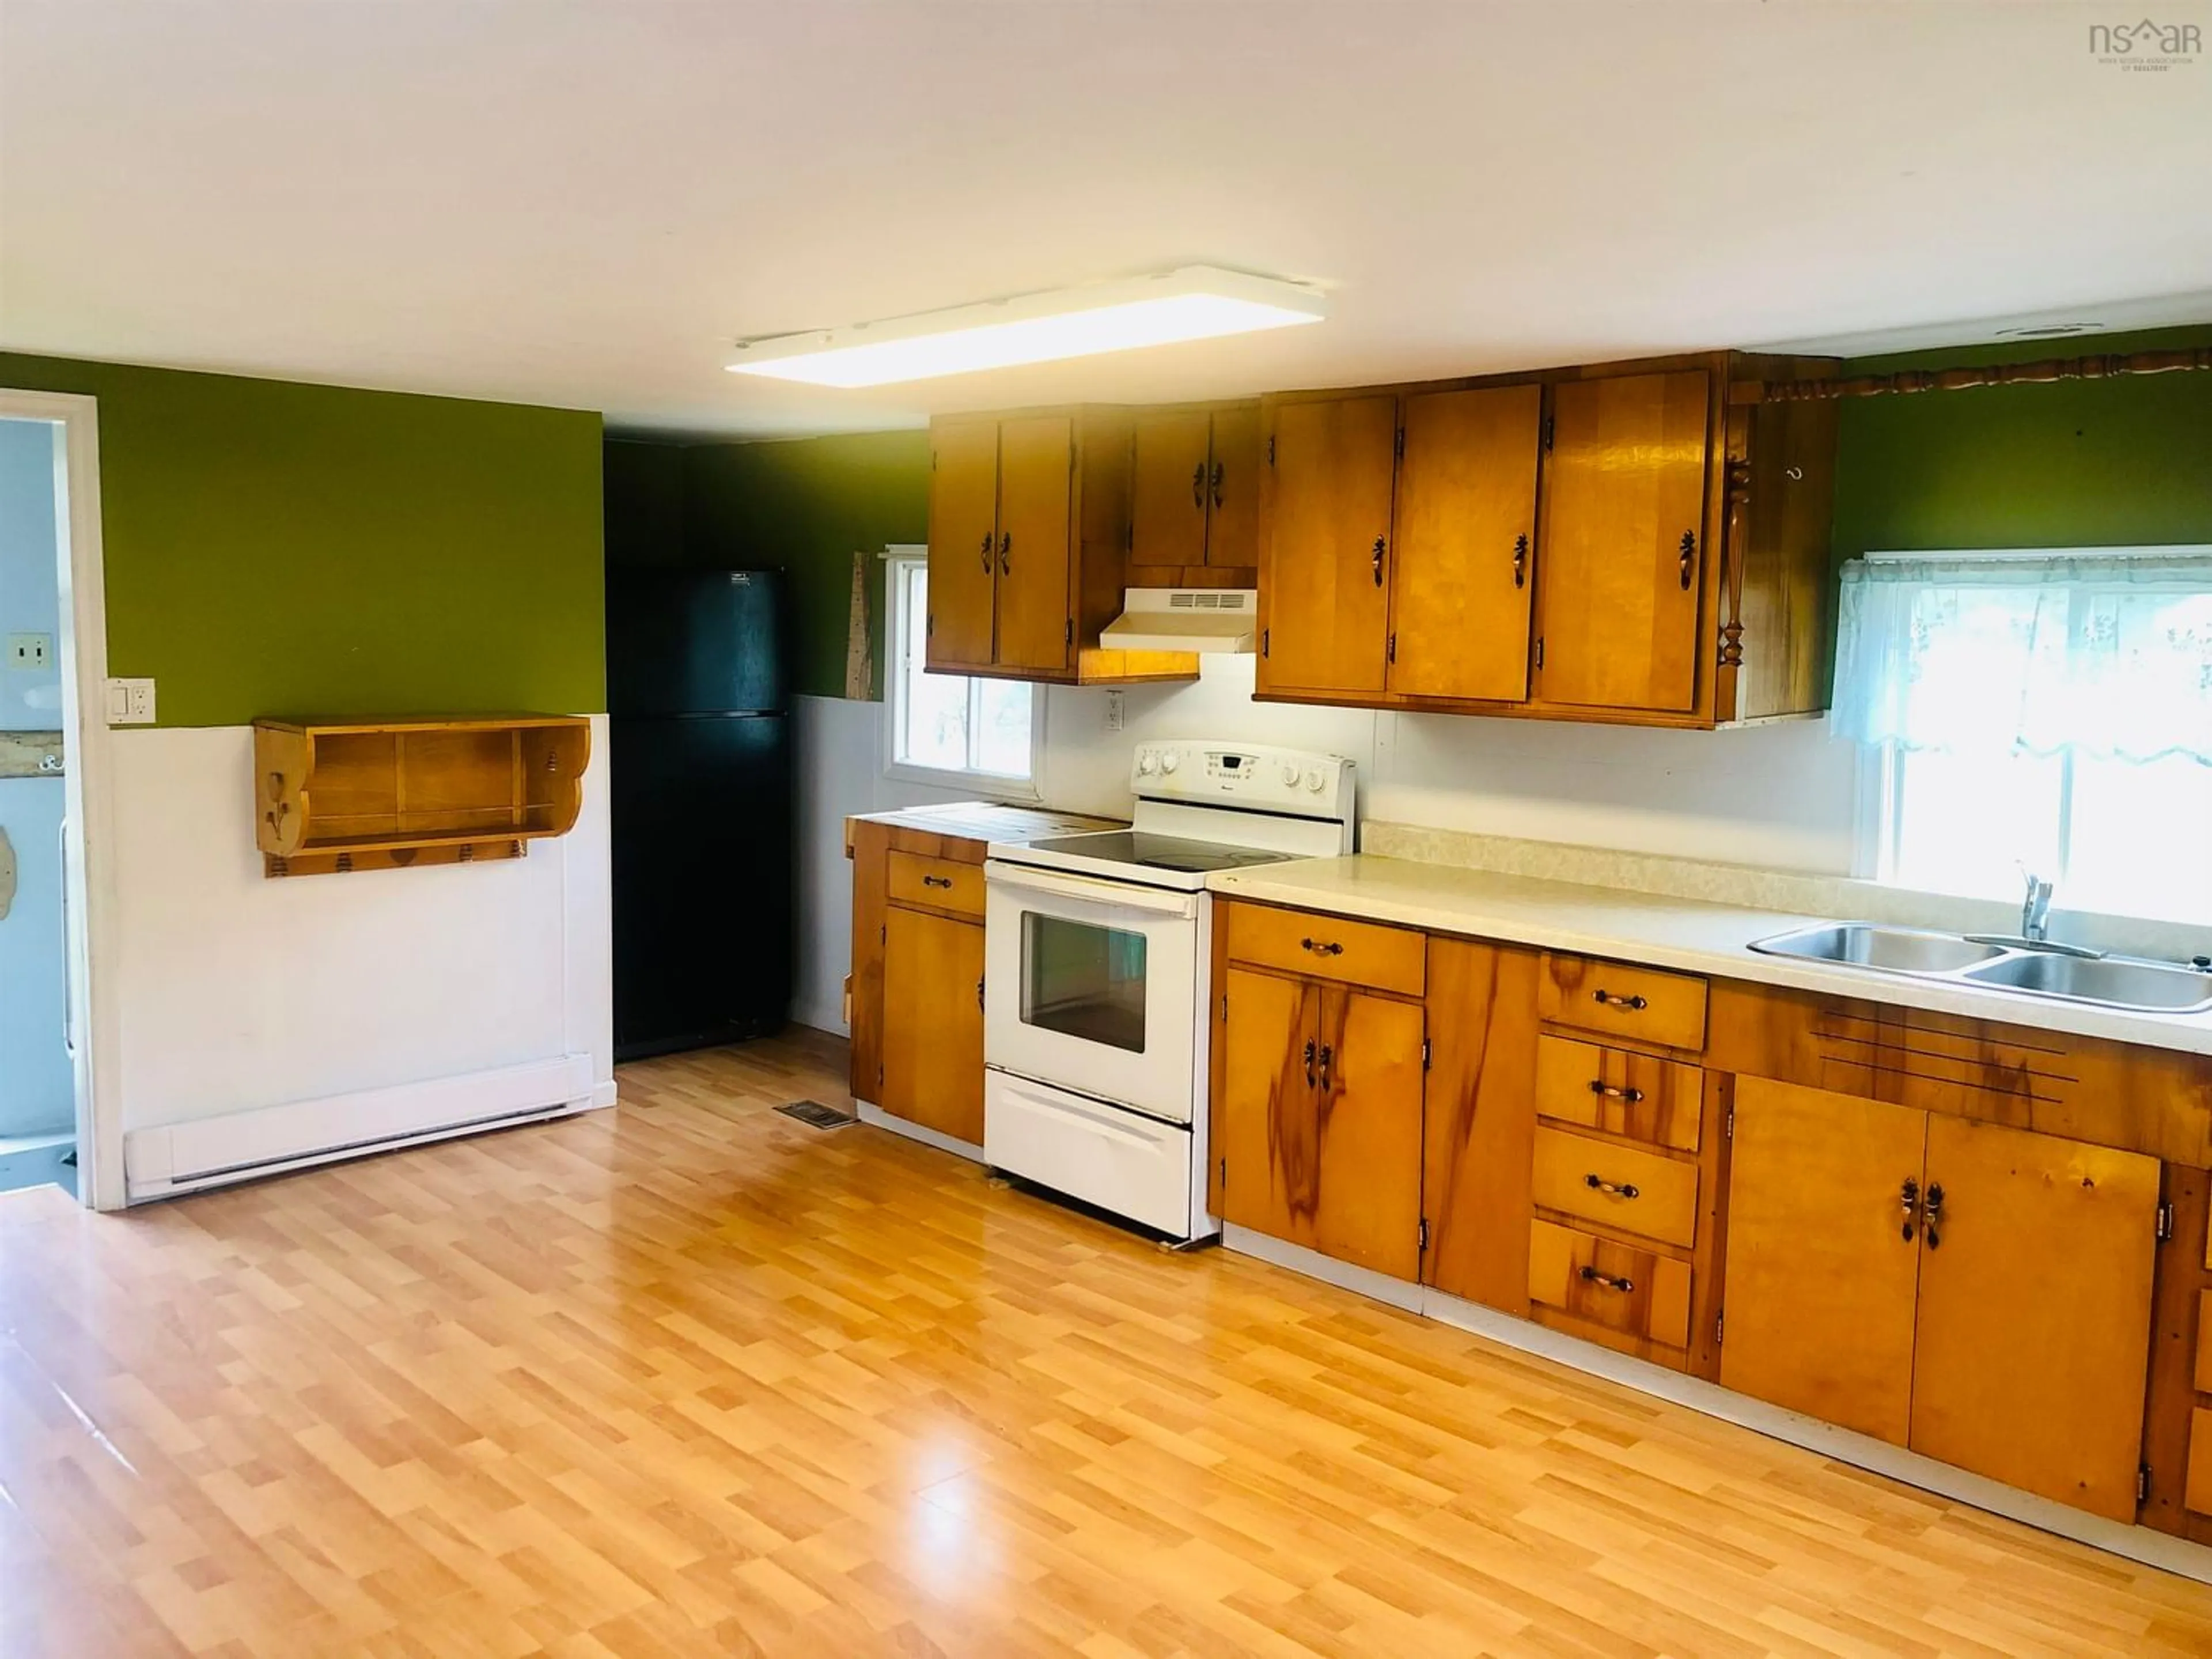 Standard kitchen for 2421 Frenchvale Rd, Frenchvale Nova Scotia B2A 4E5